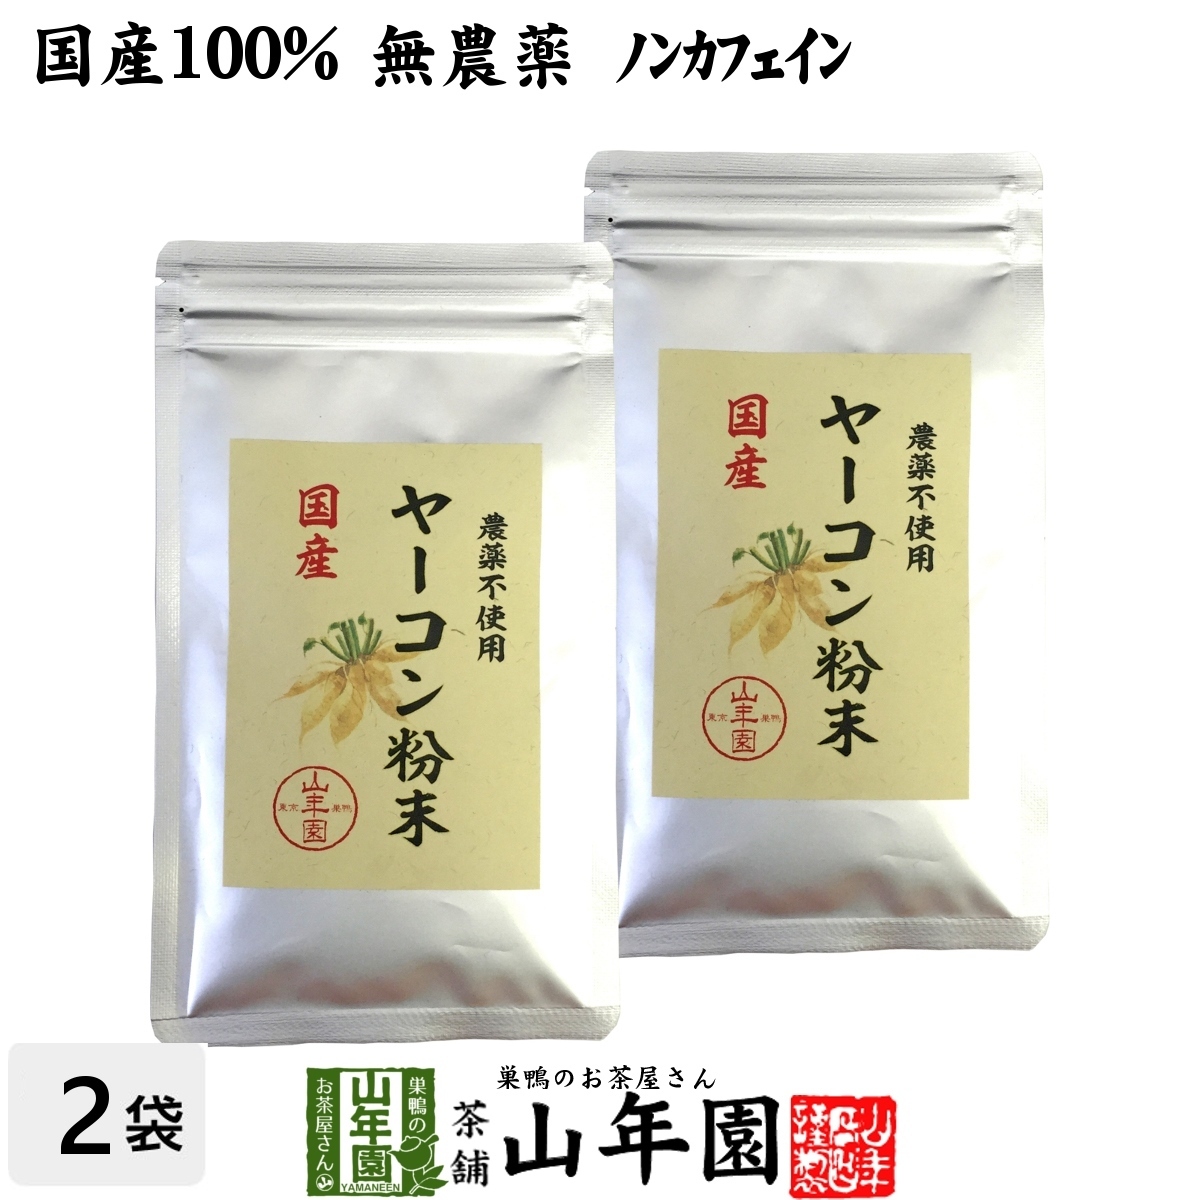 Здравоохранение на 100% пестициды без якона порошка 50 г x 2 мешки устанавливают не -кофеин из префектуры Aomori